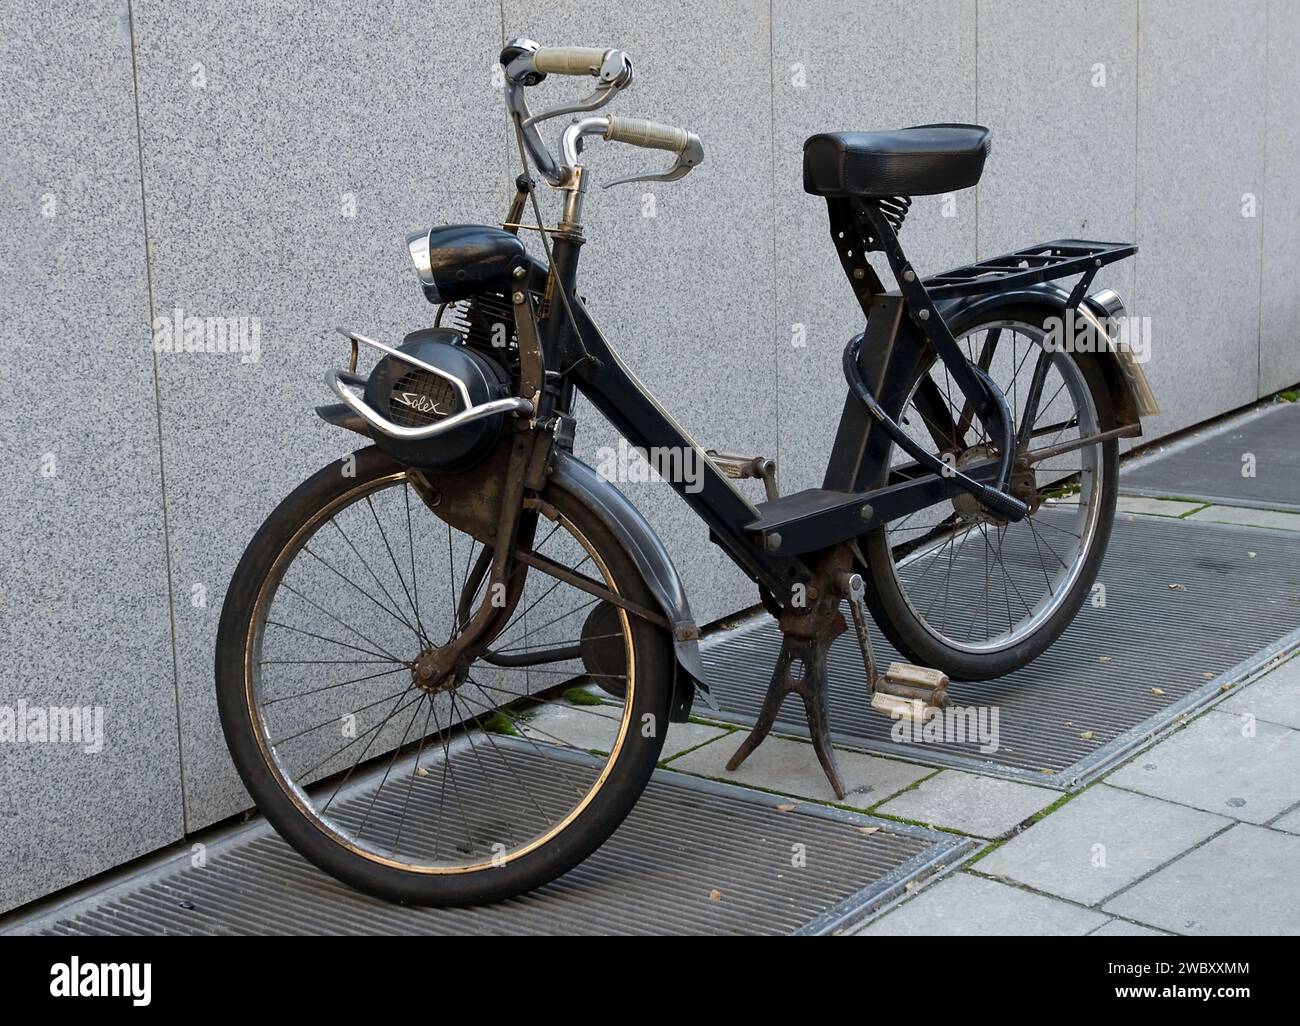 Ein Velo solex ein französisches Moped, das in München geparkt ist, ist halb Fahrrad, halb Motorrad mit einem Einzylinder-Verbrennungsmotor Stockfoto